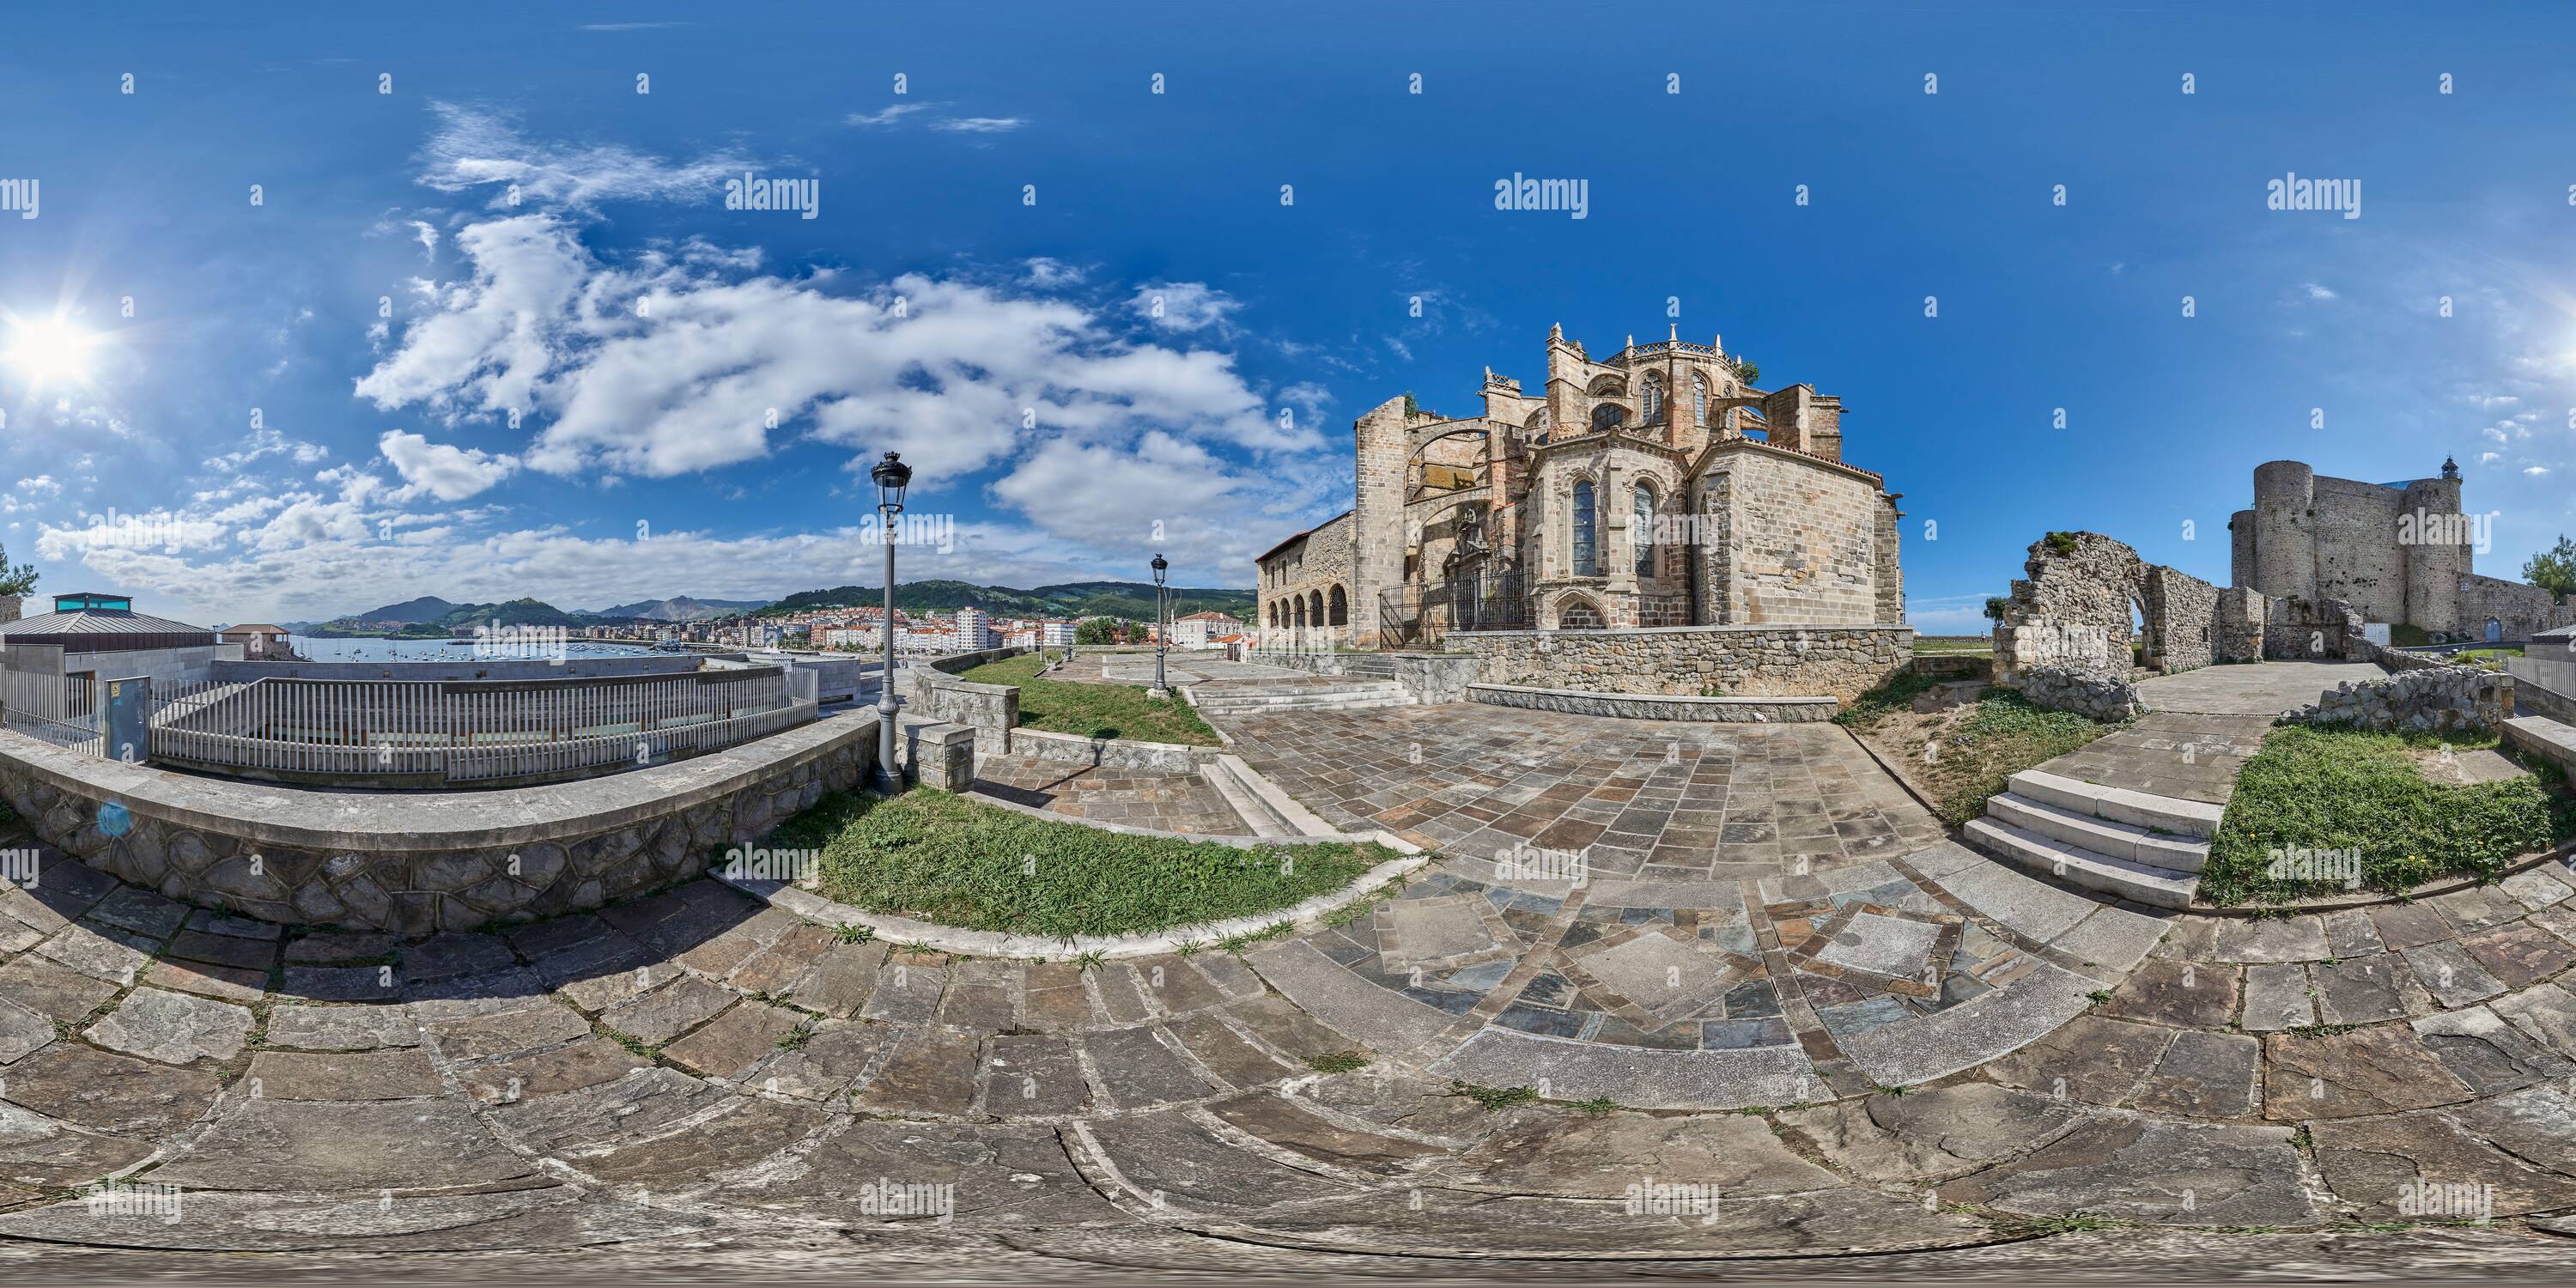 Vue panoramique à 360° de 360 degrés panoramique: Eglise de Santa María de la Asunción et Château de Santa Ana à Castro Urdiales, Cantabrie, Espagne, Europe